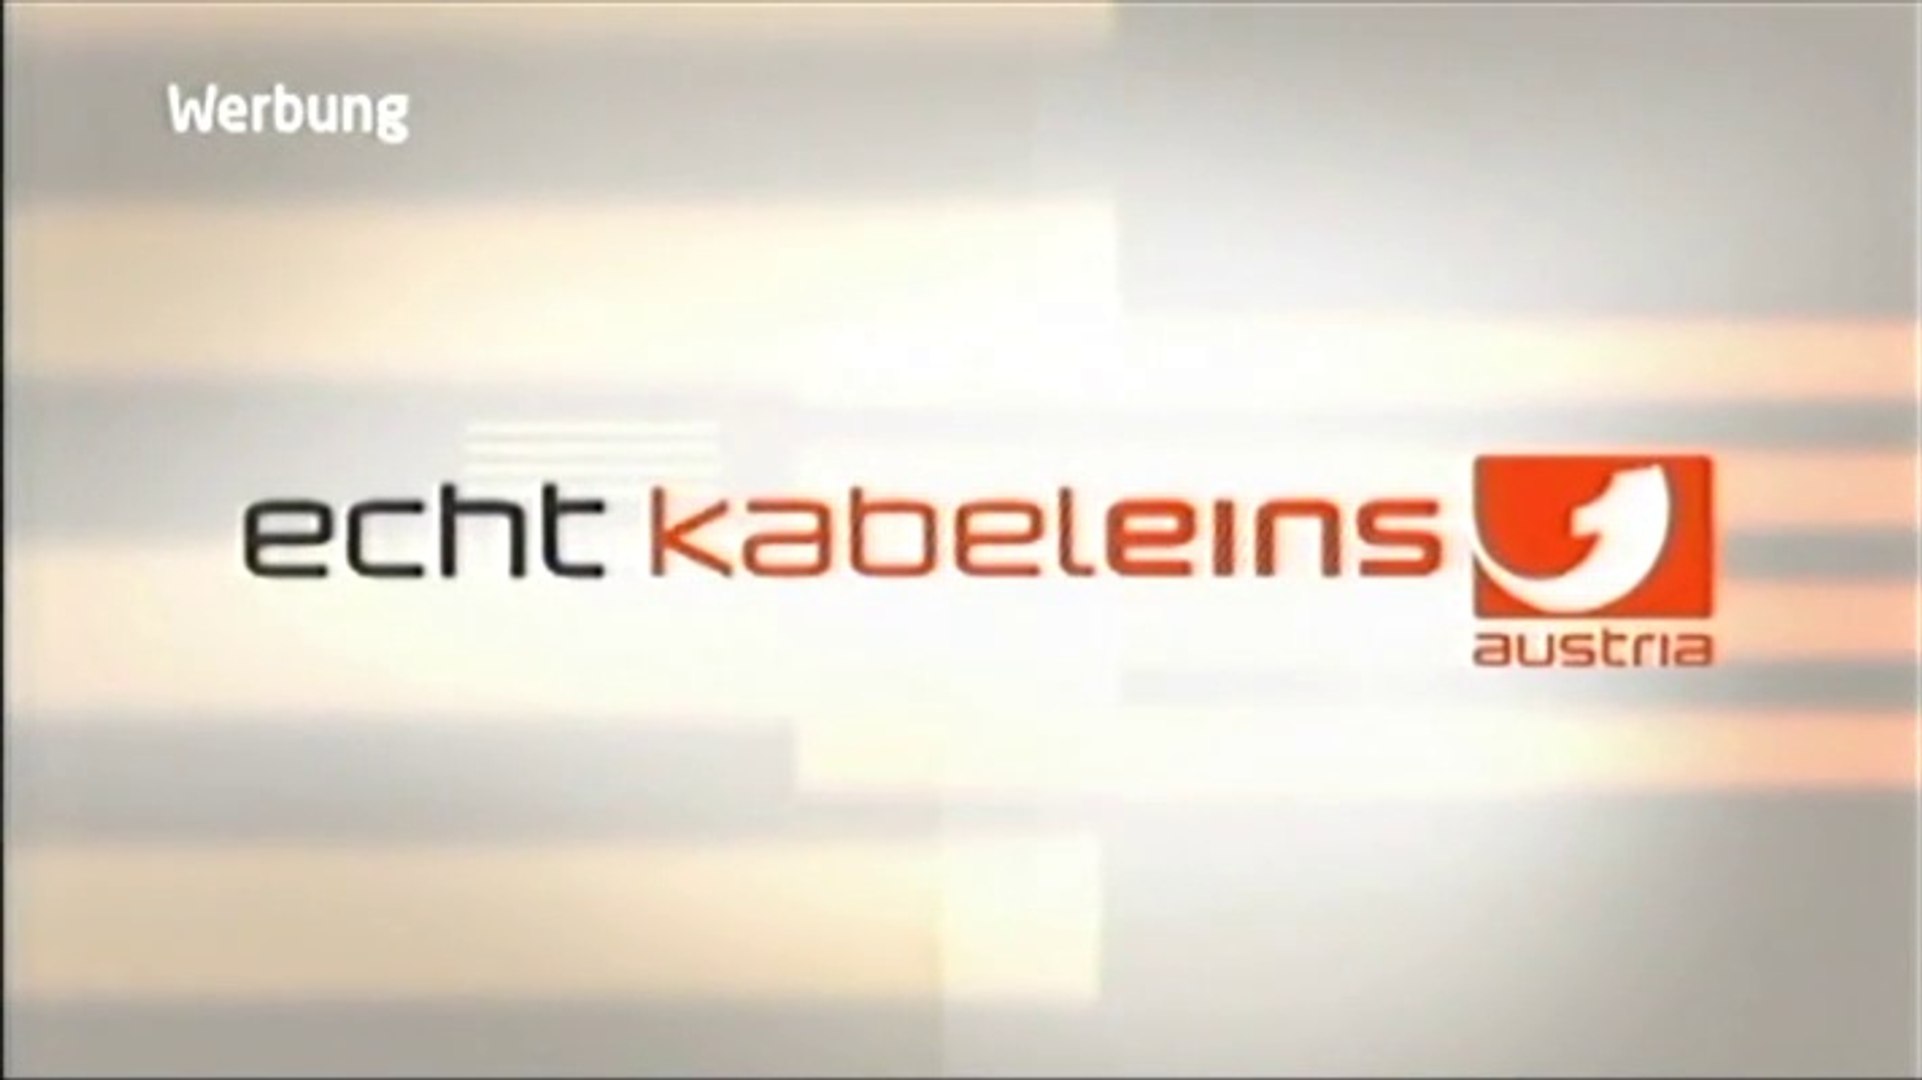 Kabel eins Austria - Werbung (2010) - video Dailymotion